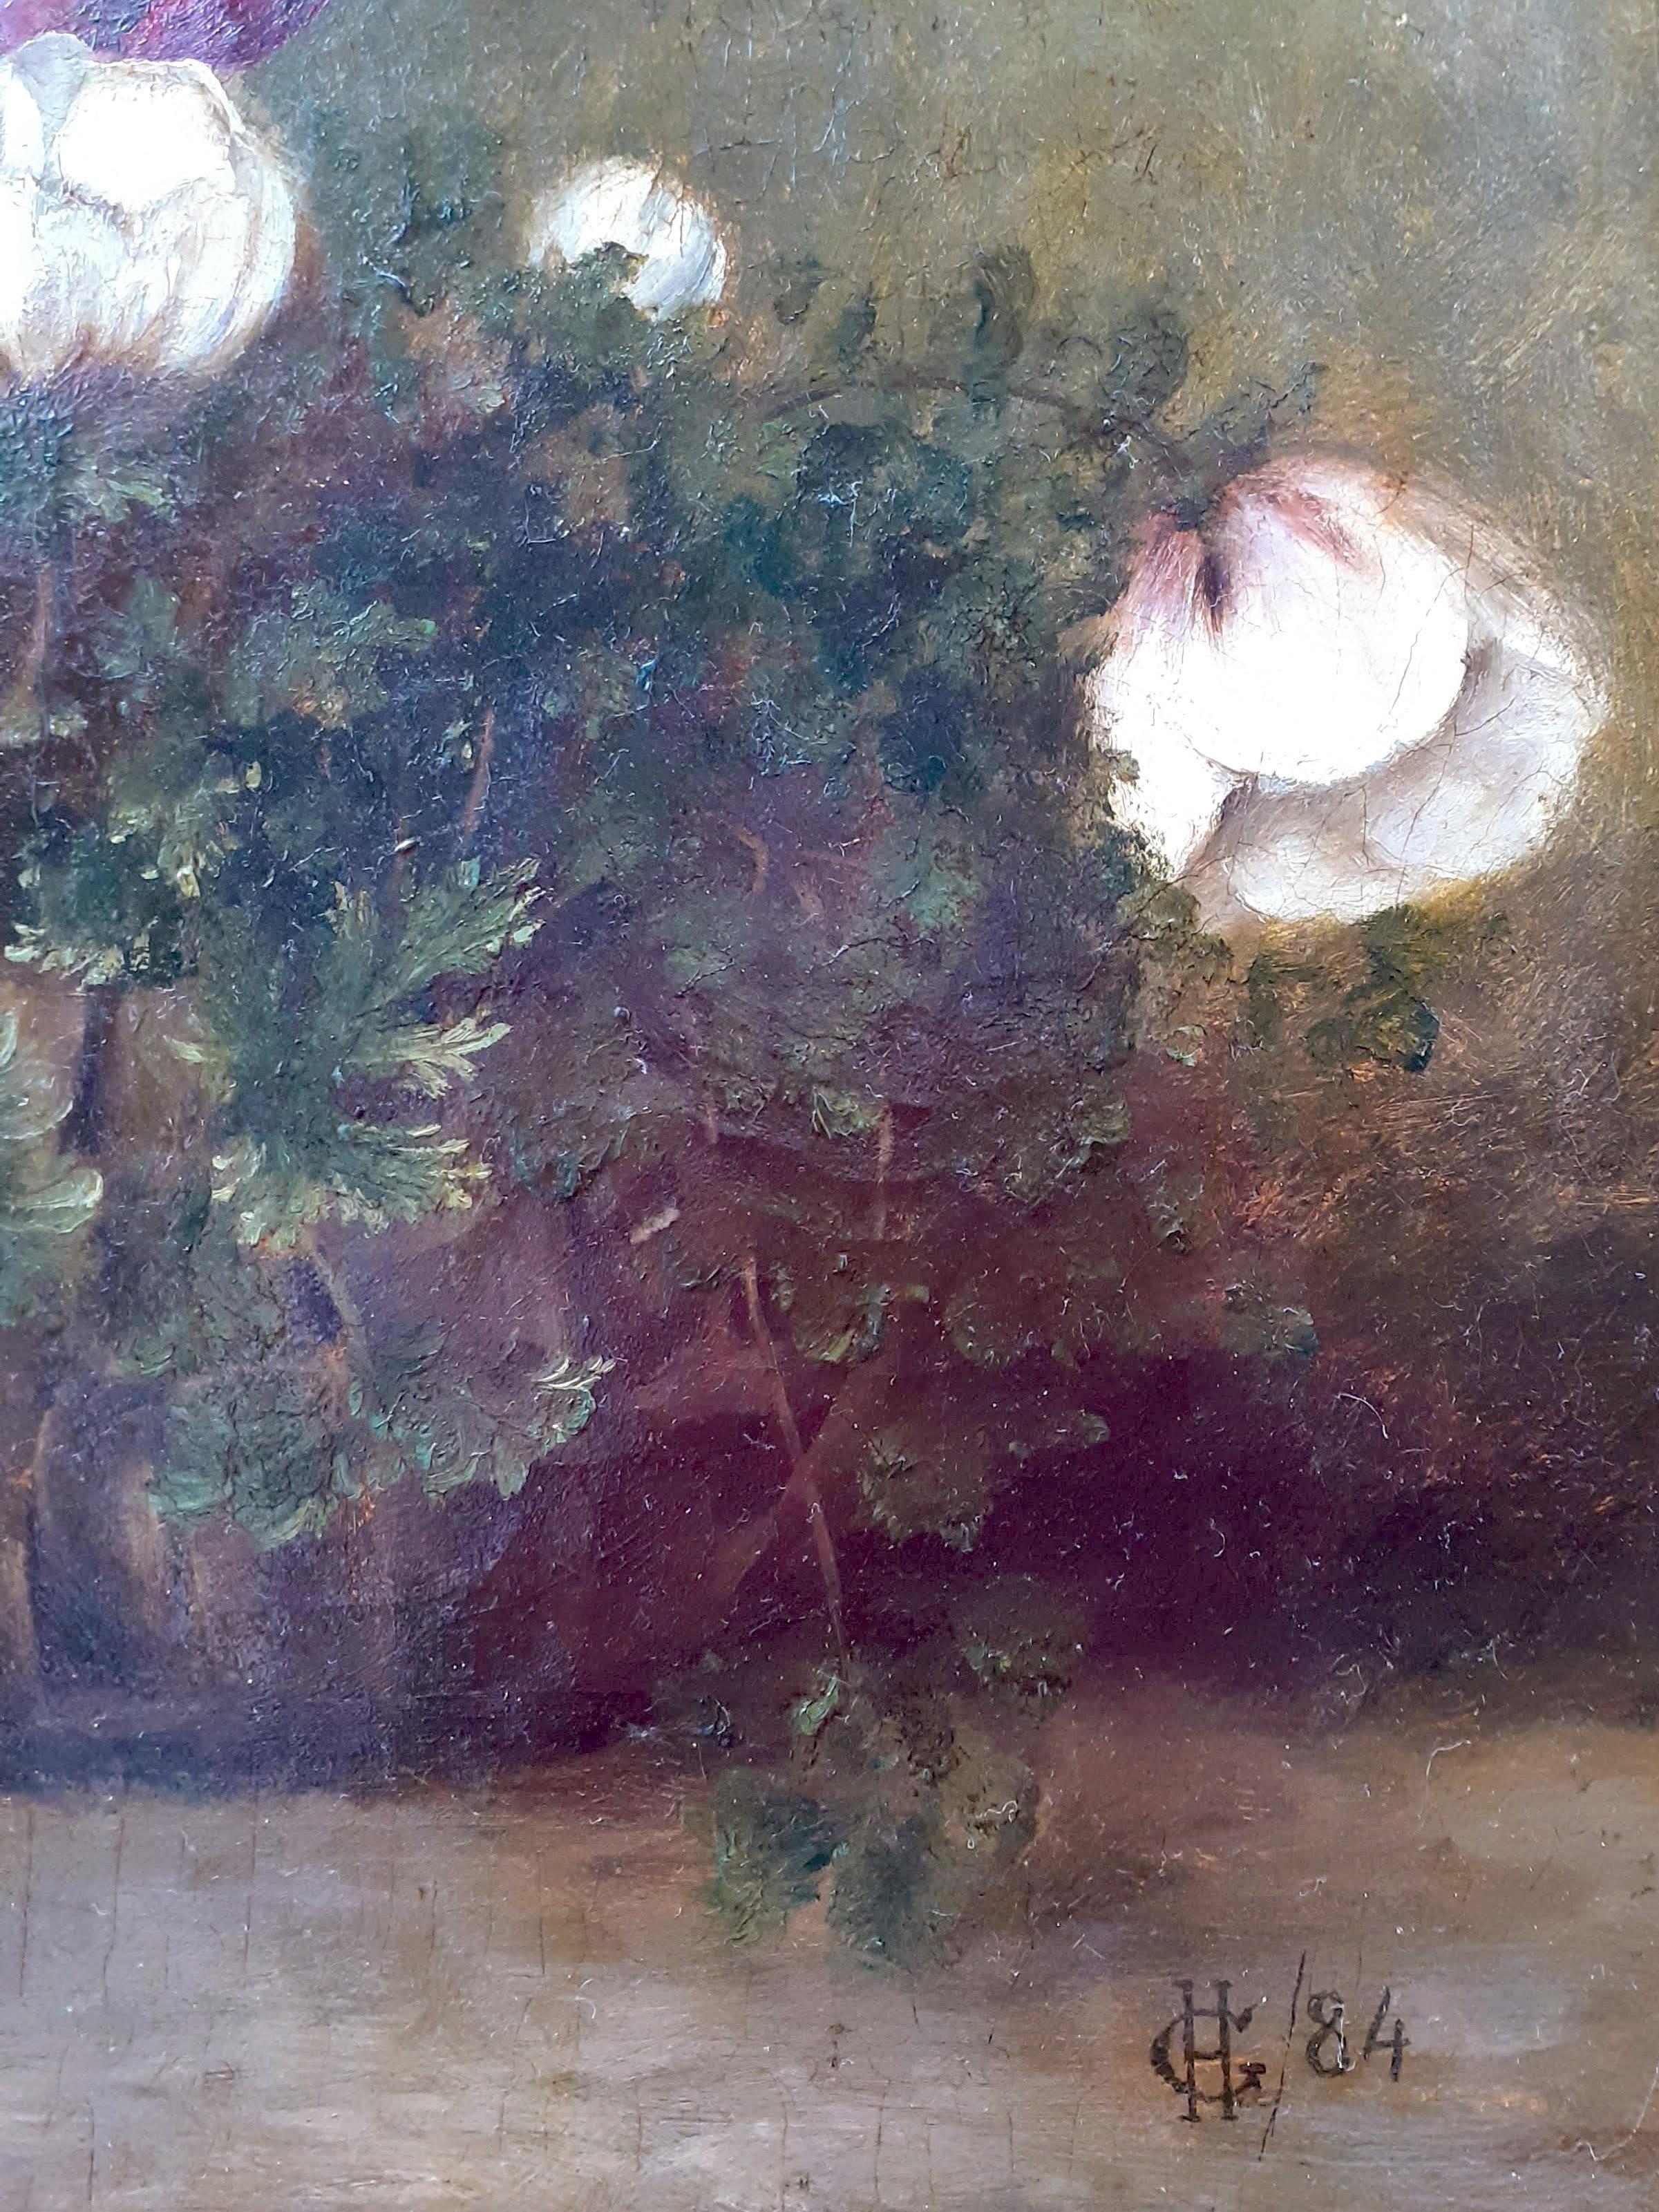 Charmante peinture du XIXe siècle représentant des fleurs d'anémone dans un panier en osier. Il a un aspect chaleureux, saisonnier et festif. J'aime la grande simplicité et la sincérité qu'il dégage. D'origine française, notre huile sur toile est